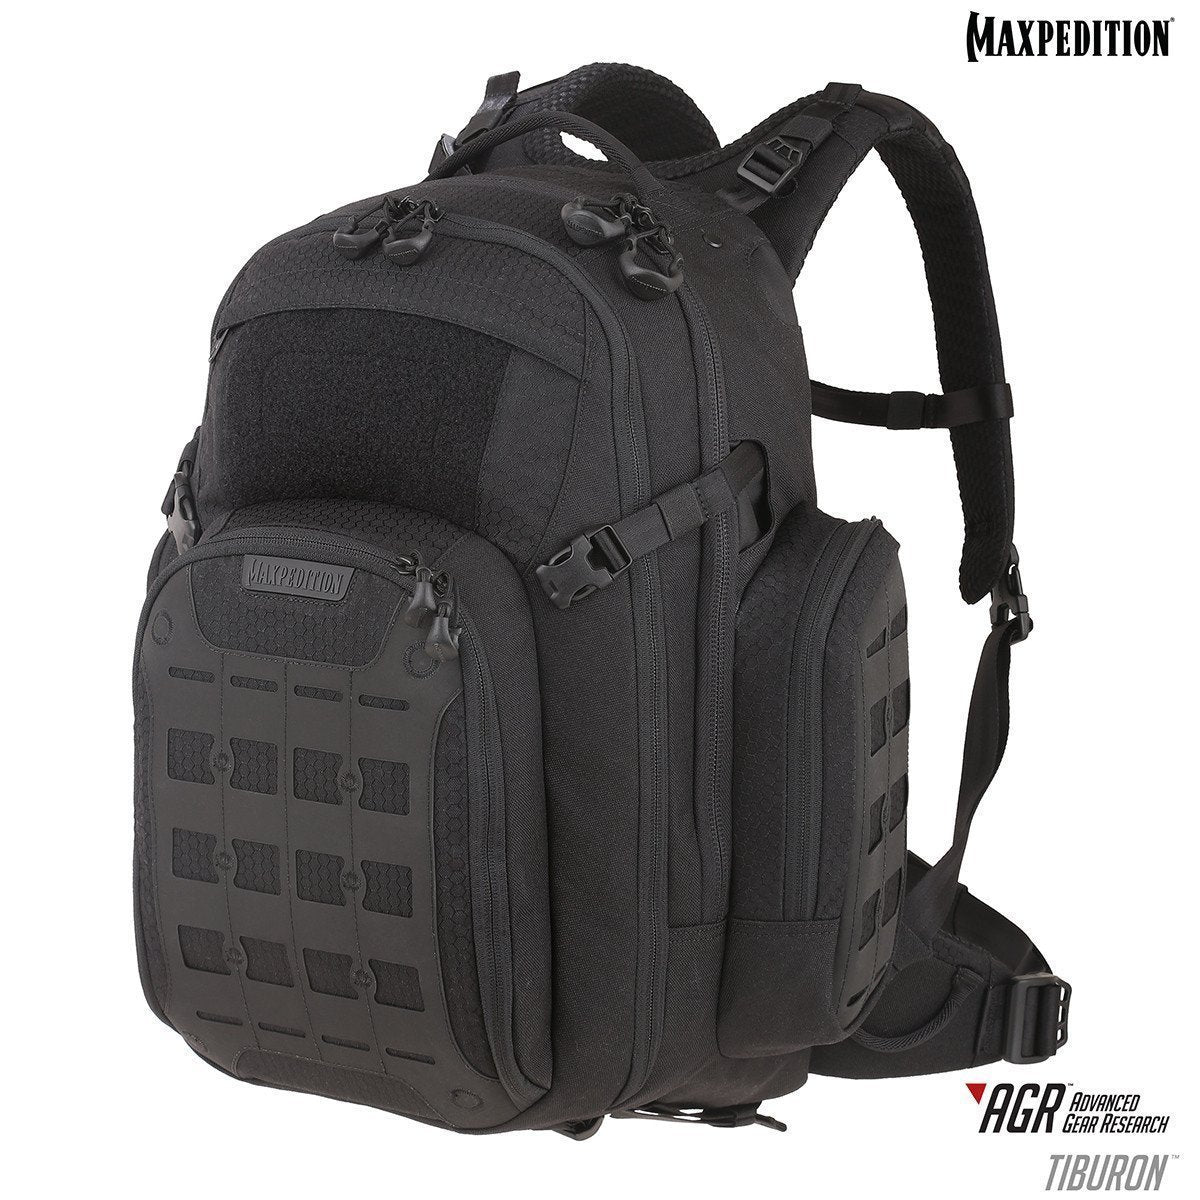 Maxpedition Tiburon Backpack 34L Backpacks Maxpedition Black Tactical Gear Supplier Tactical Distributors Australia